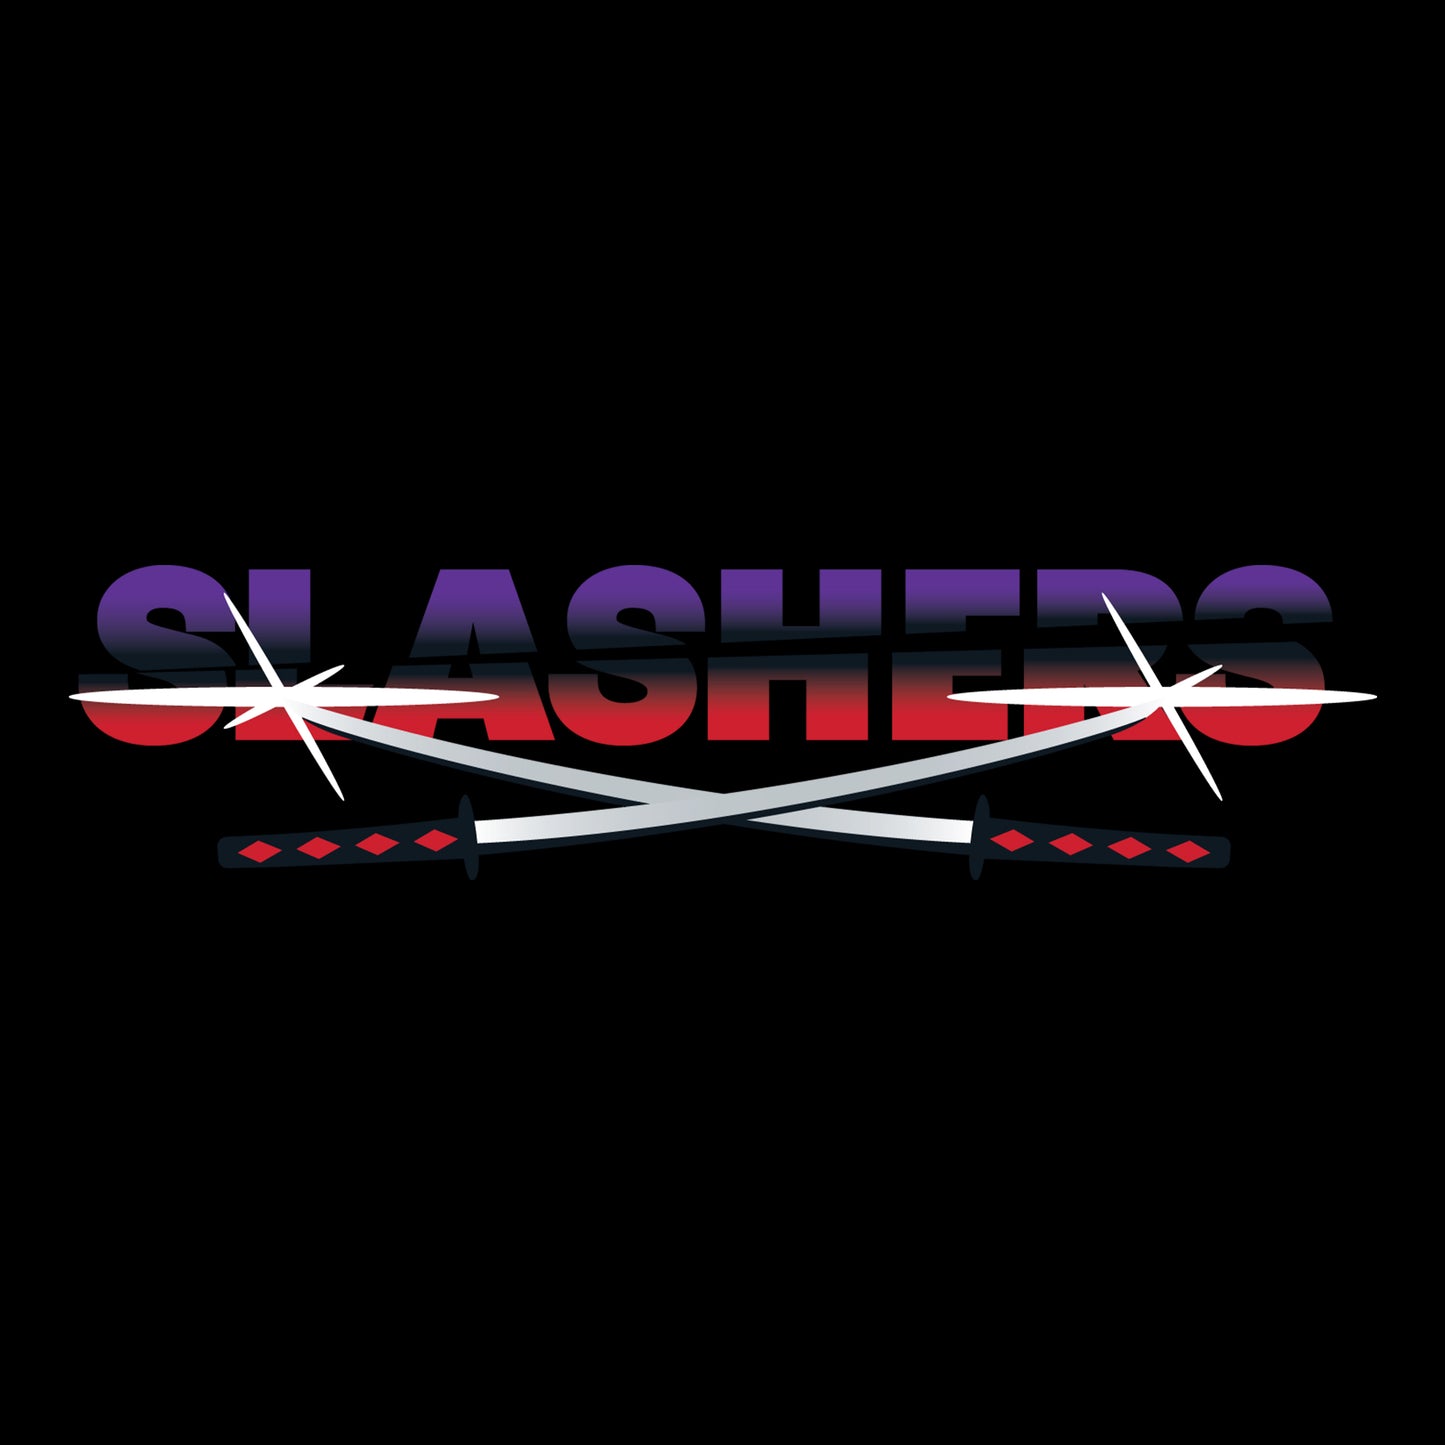 SLASHERS - Team Hoodie - Black